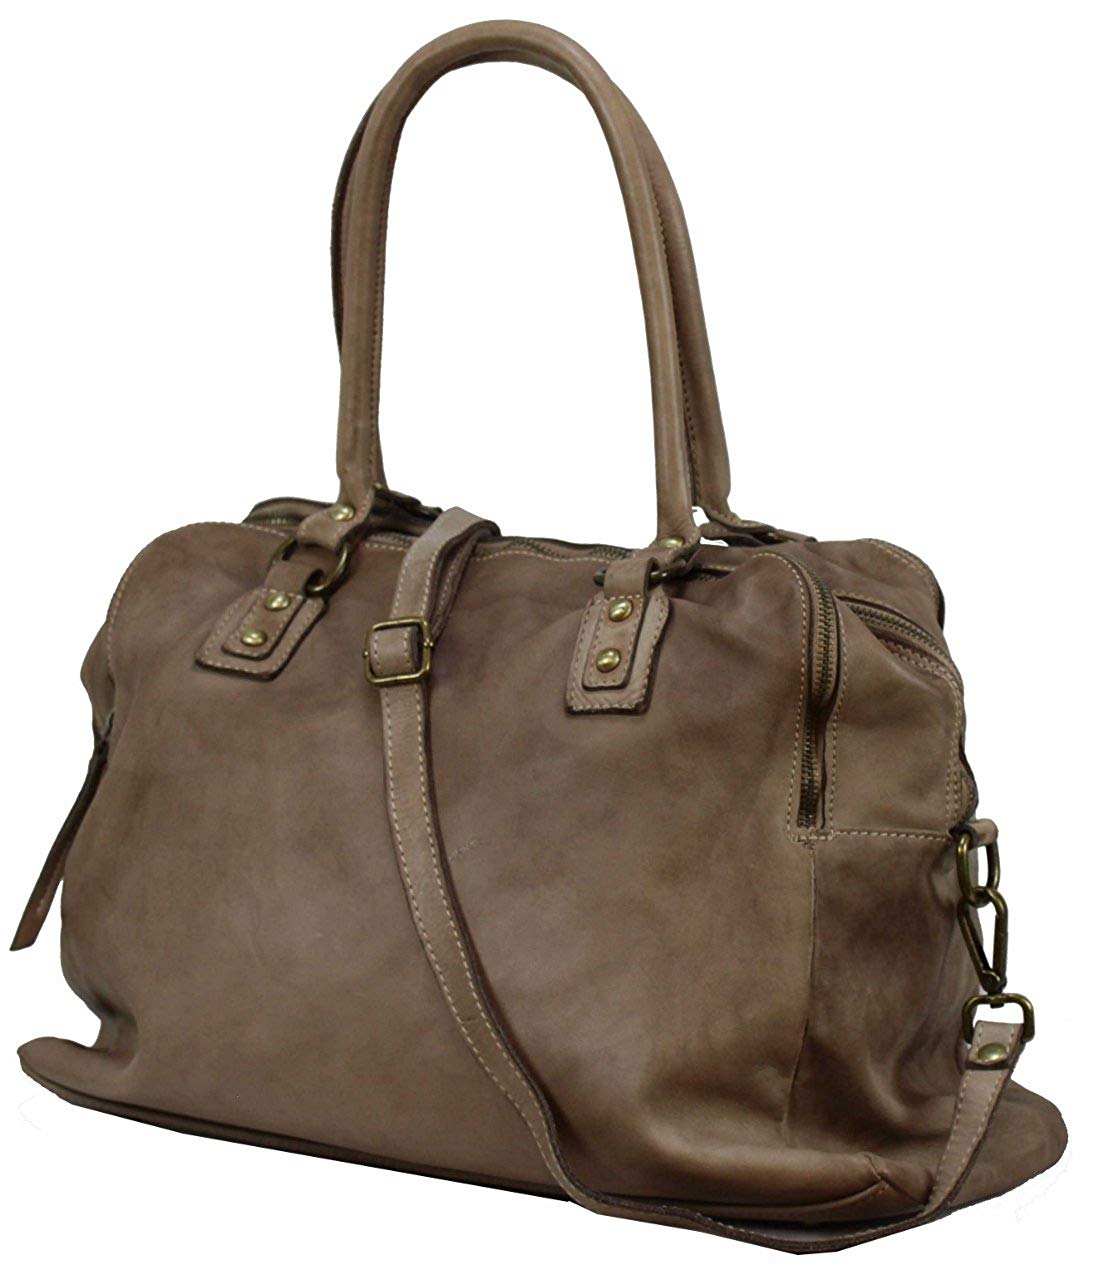 BOZANA Bag Lue beige Italy Designer Messenger Damen Handtasche Schultertasche Tasche Leder Shopper Neu